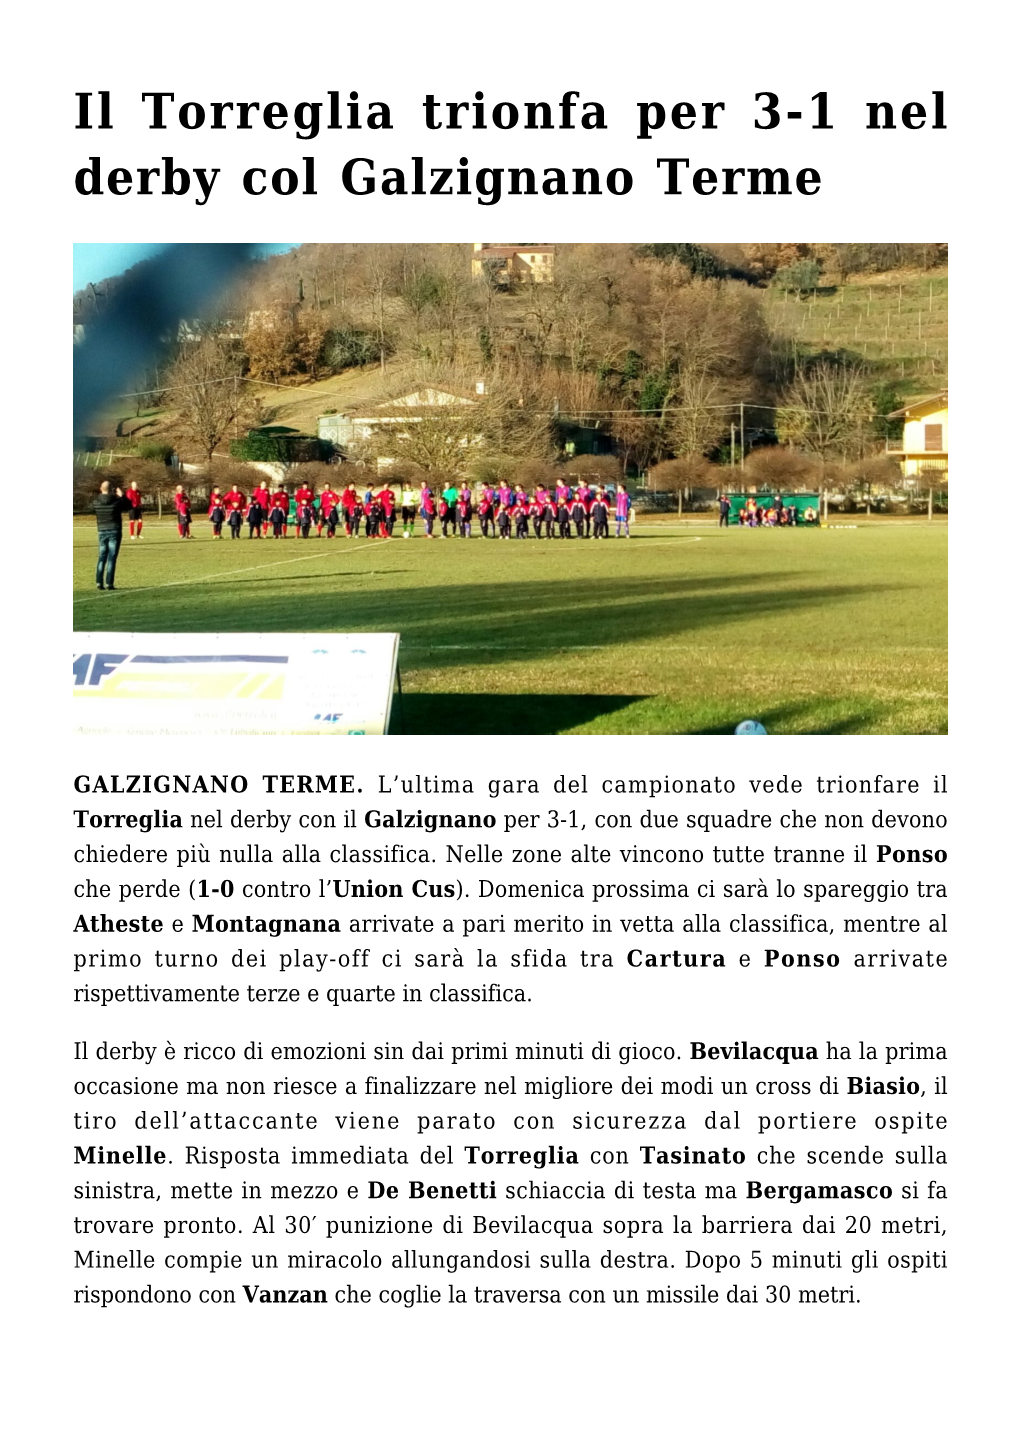 Il Torreglia Trionfa Per 3-1 Nel Derby Col Galzignano Terme